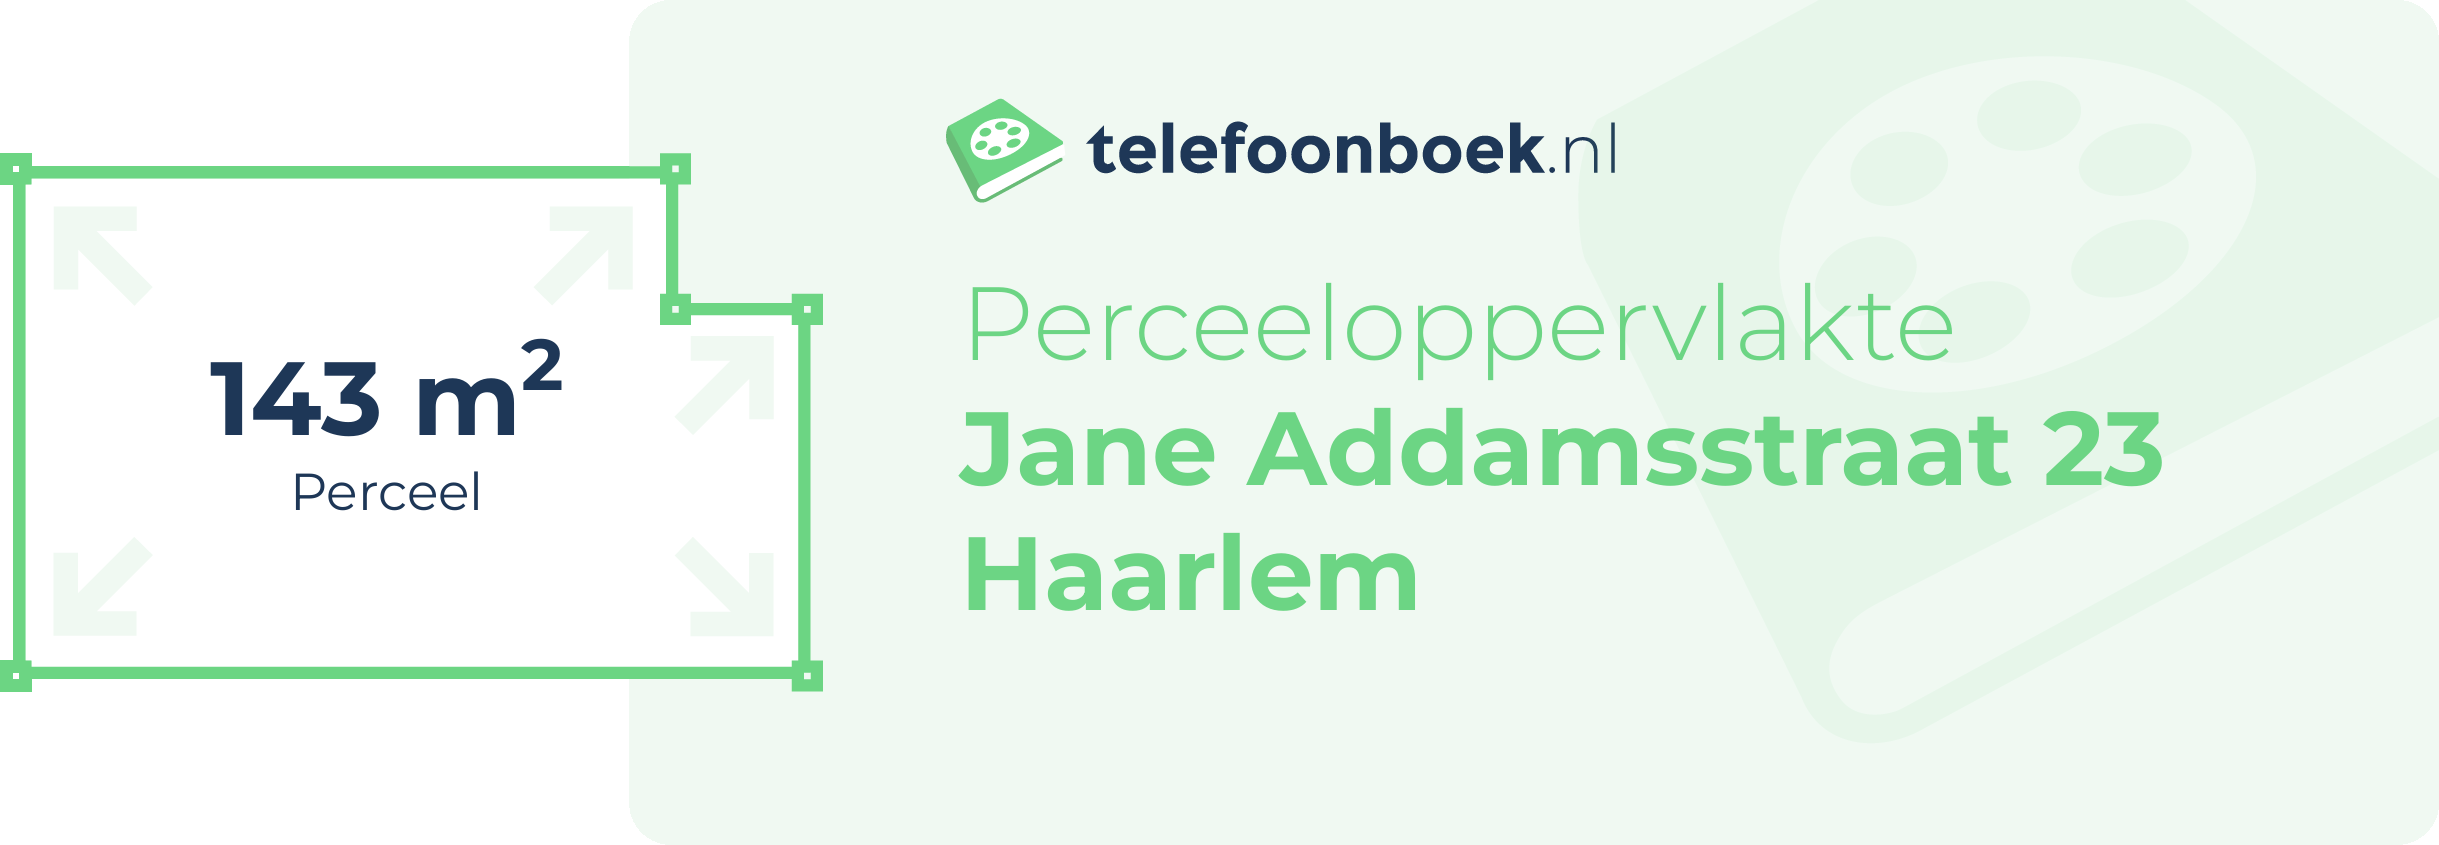 Perceeloppervlakte Jane Addamsstraat 23 Haarlem